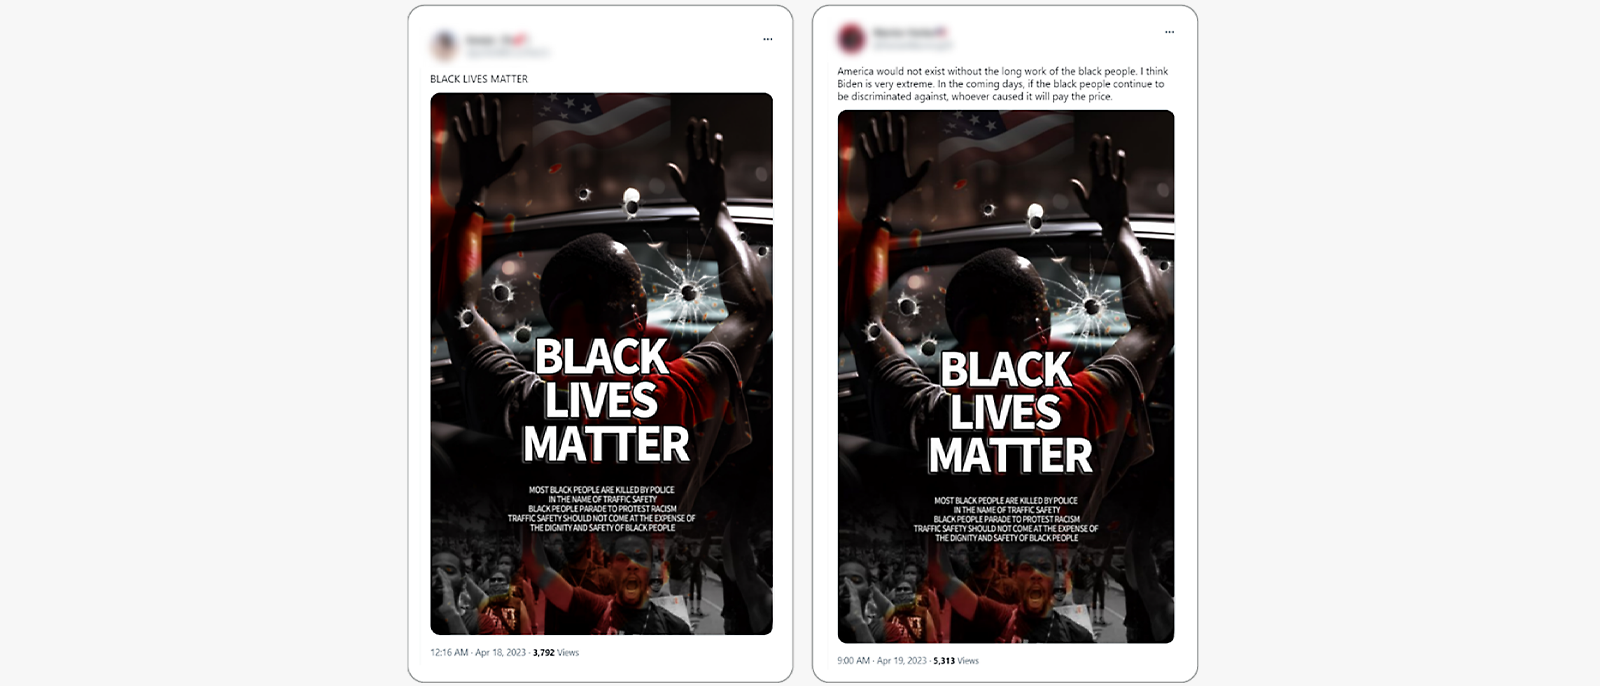 Publicaciones de redes sociales lado a lado en la que se muestran imágenes de Black Lives Matter idénticas.